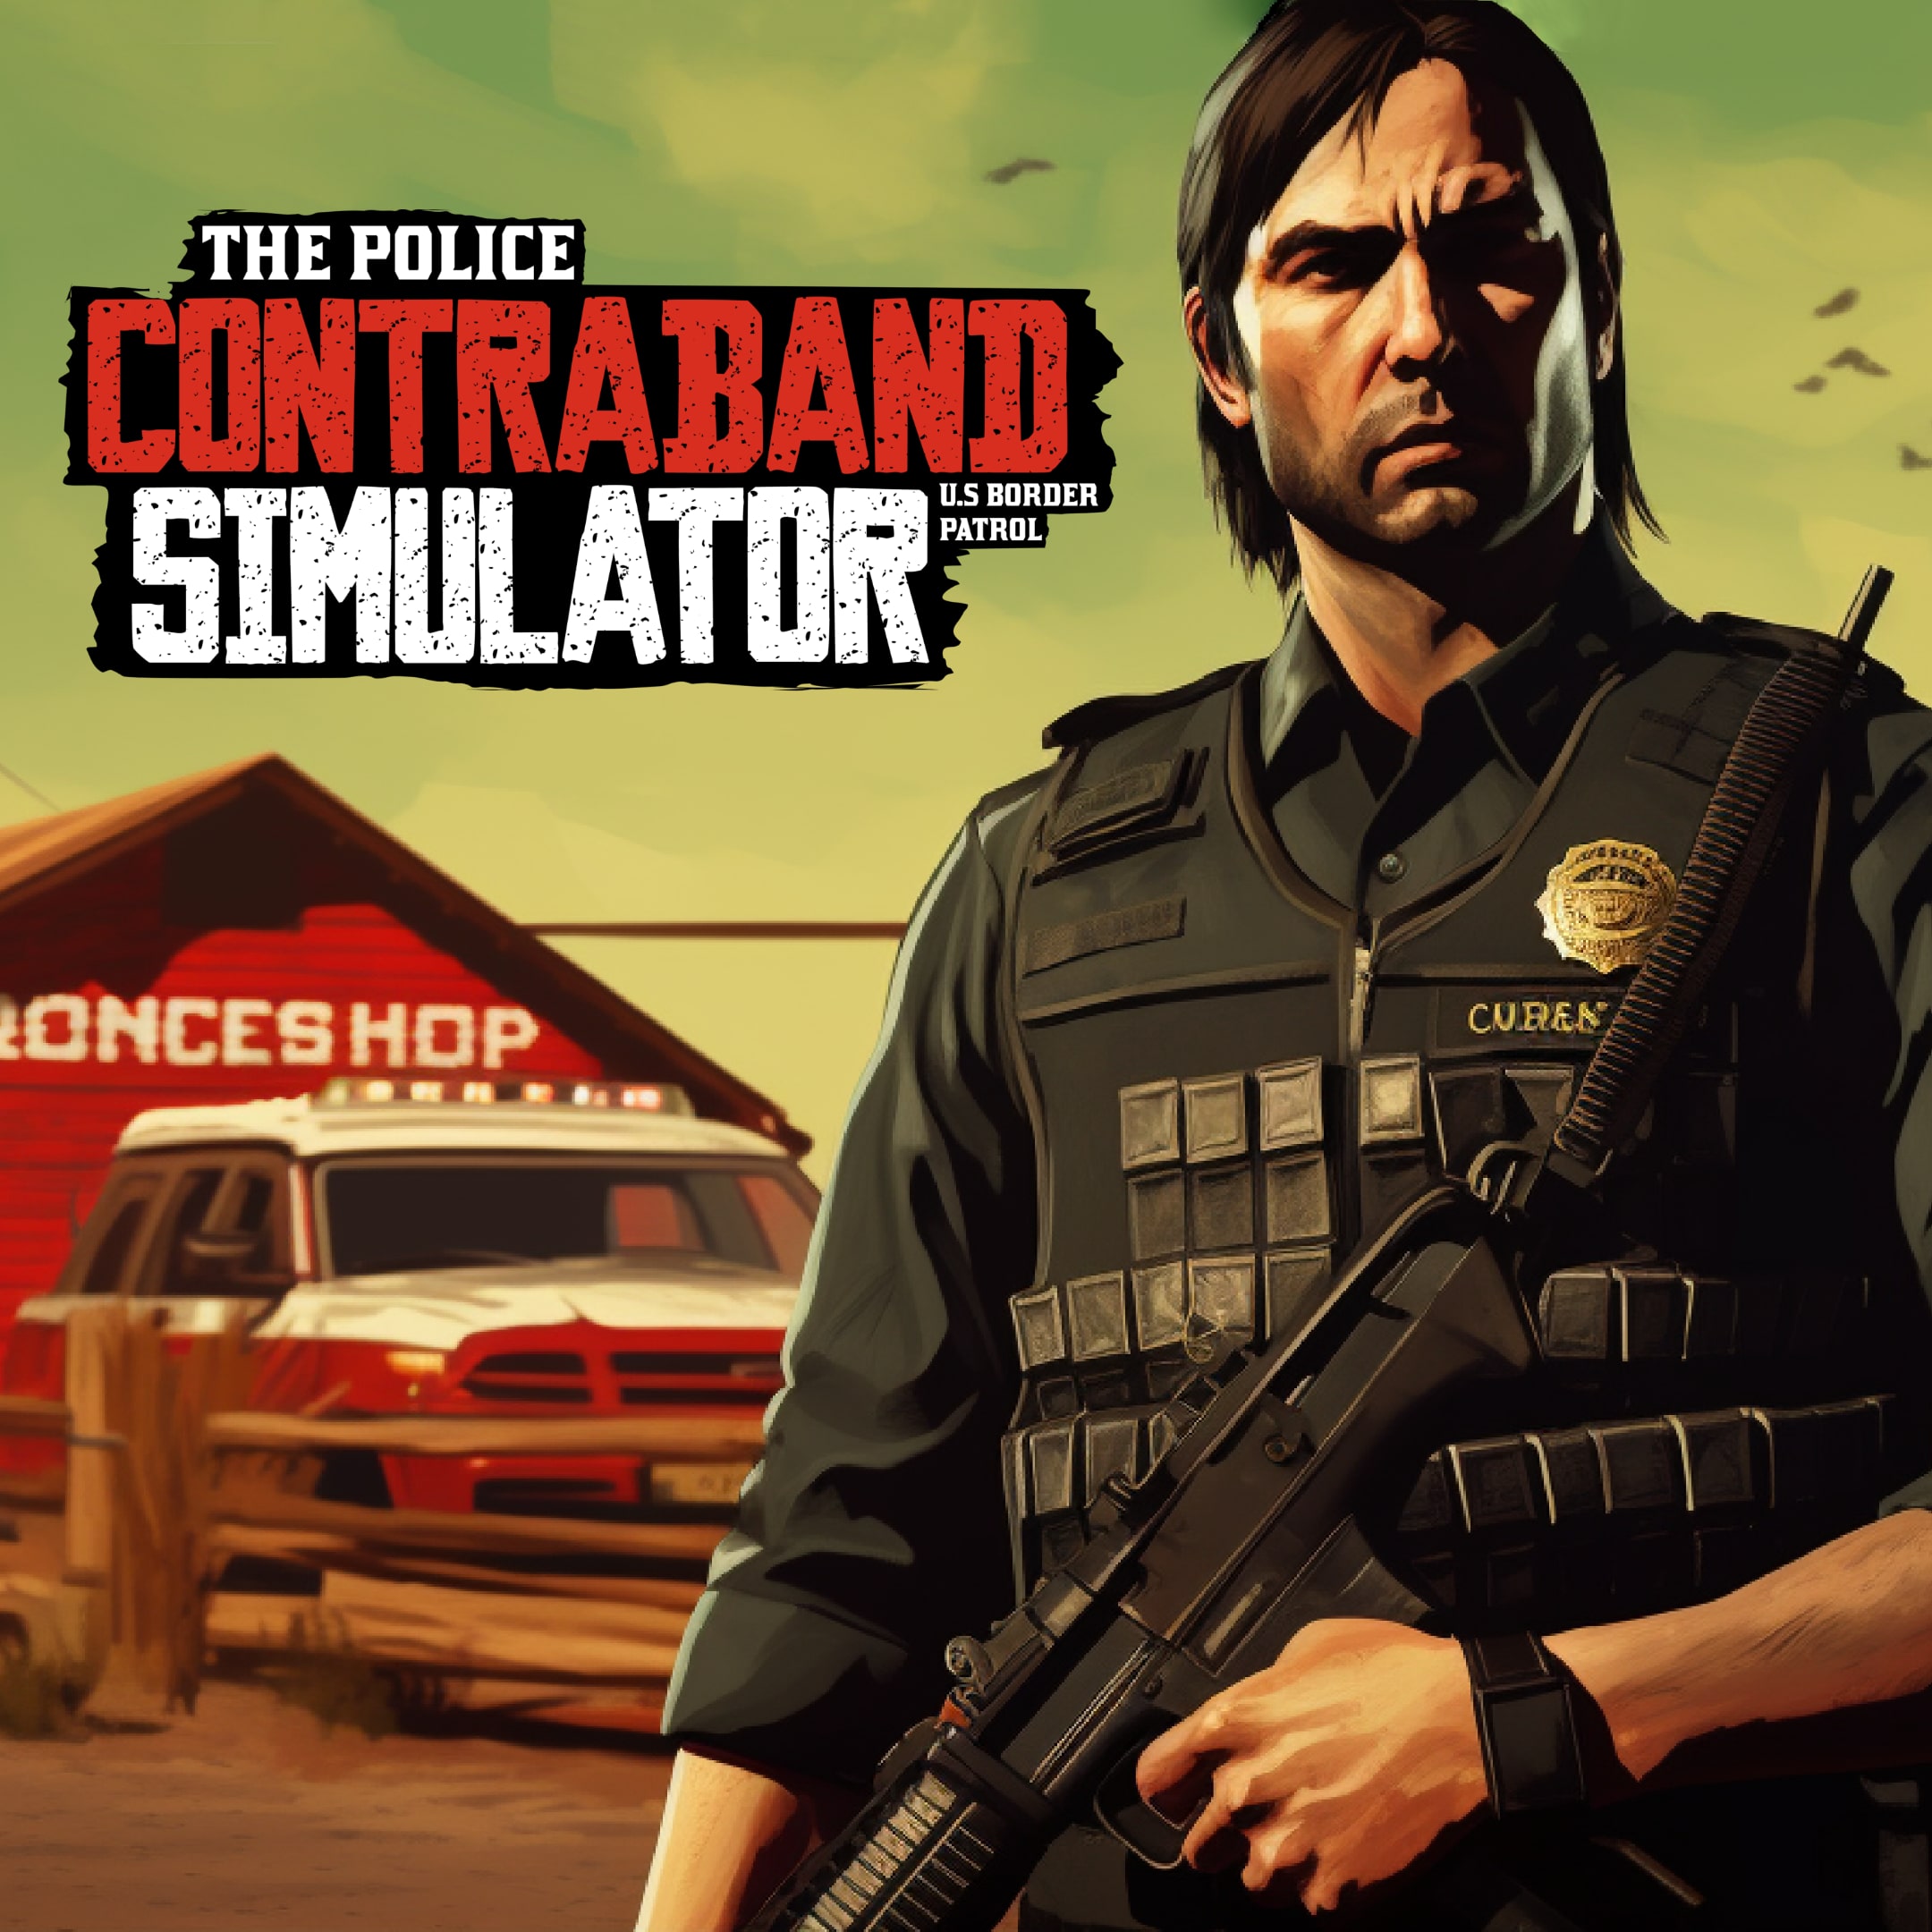 CONTRABAND POLICE - Gameplay em PT/BR no PC deste game de Patrulha da  Fronteira 